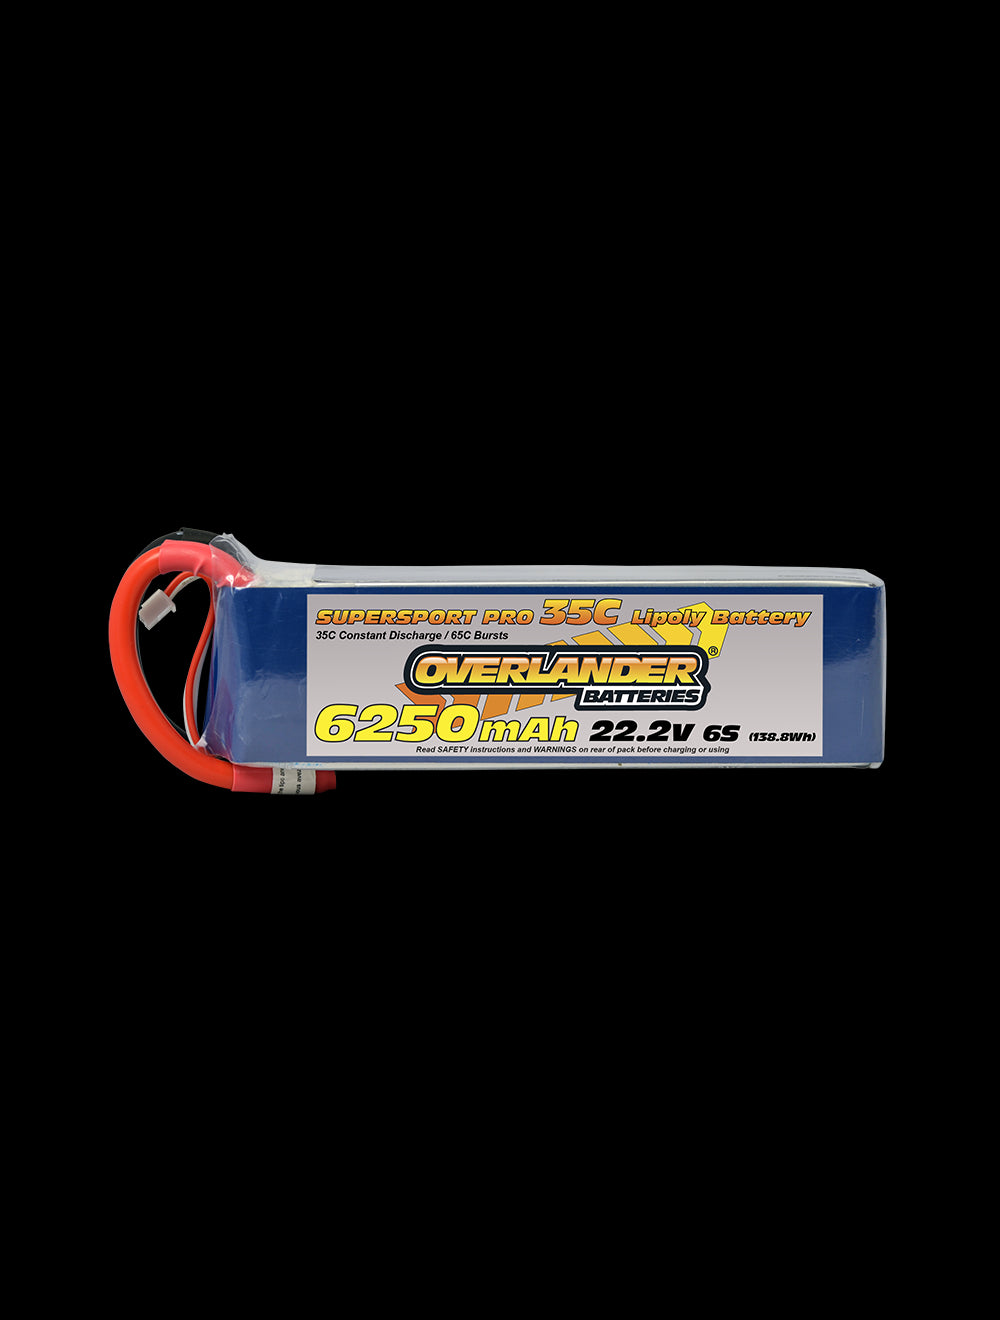 Overlander 6250mAh 22.2V 6S 35C Supersport Pro LiPo Battery - EC5 Connector 2649